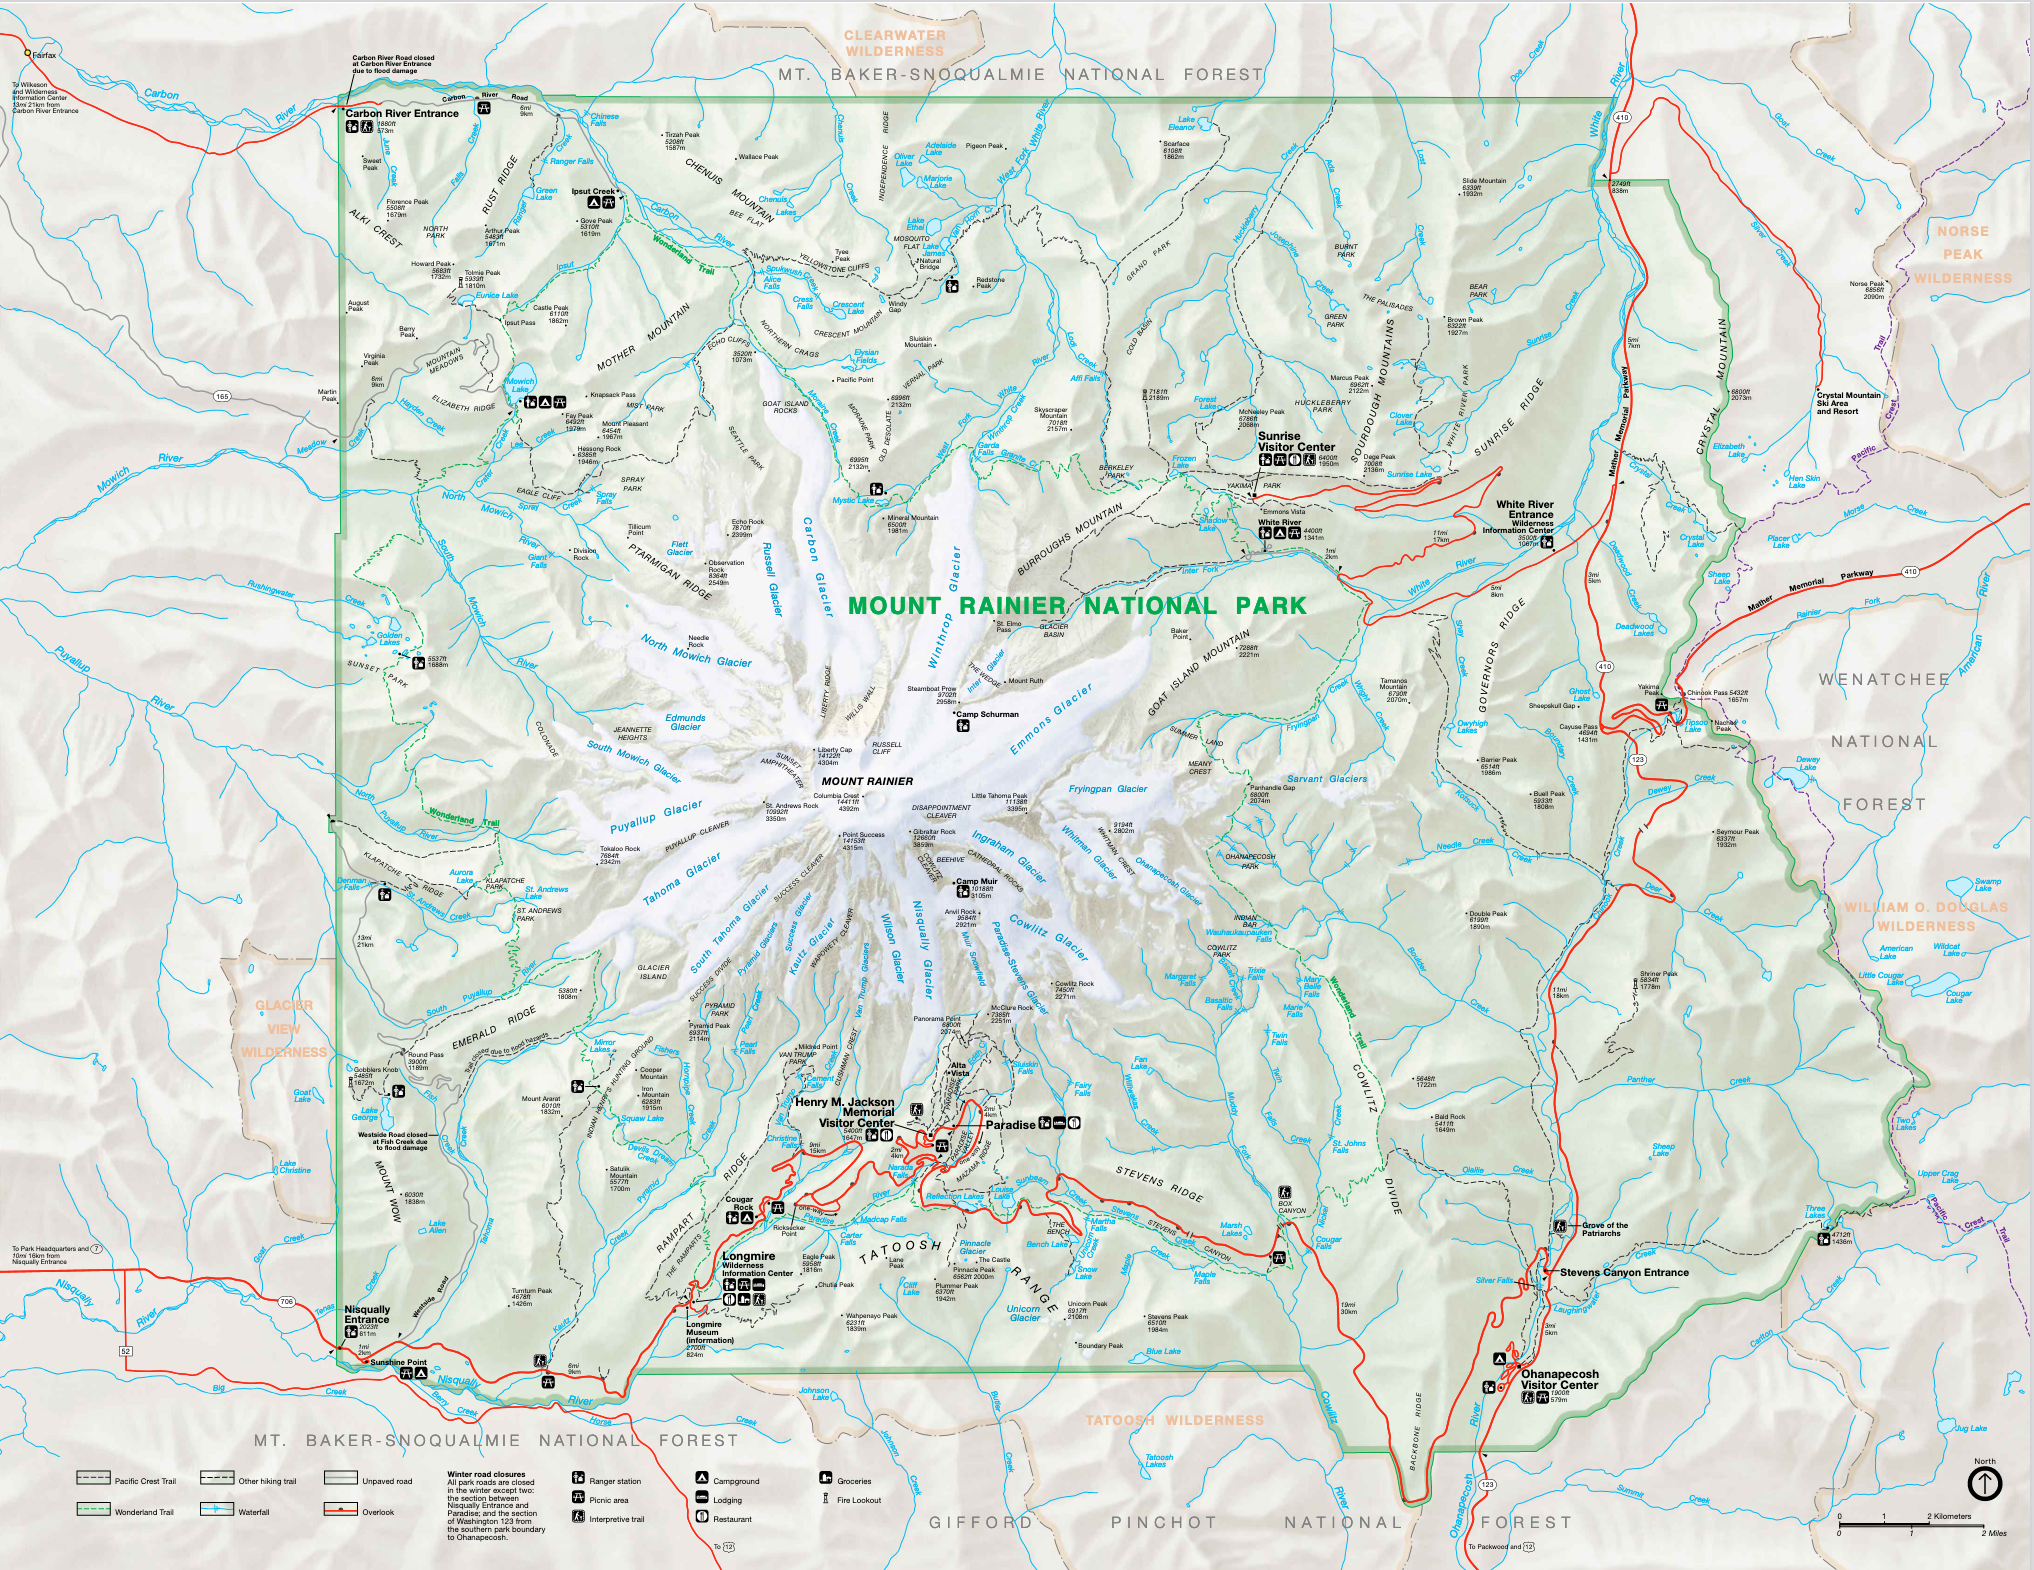 Mt. Rainier National Park entrances
Mt. Rainier National Park map regions